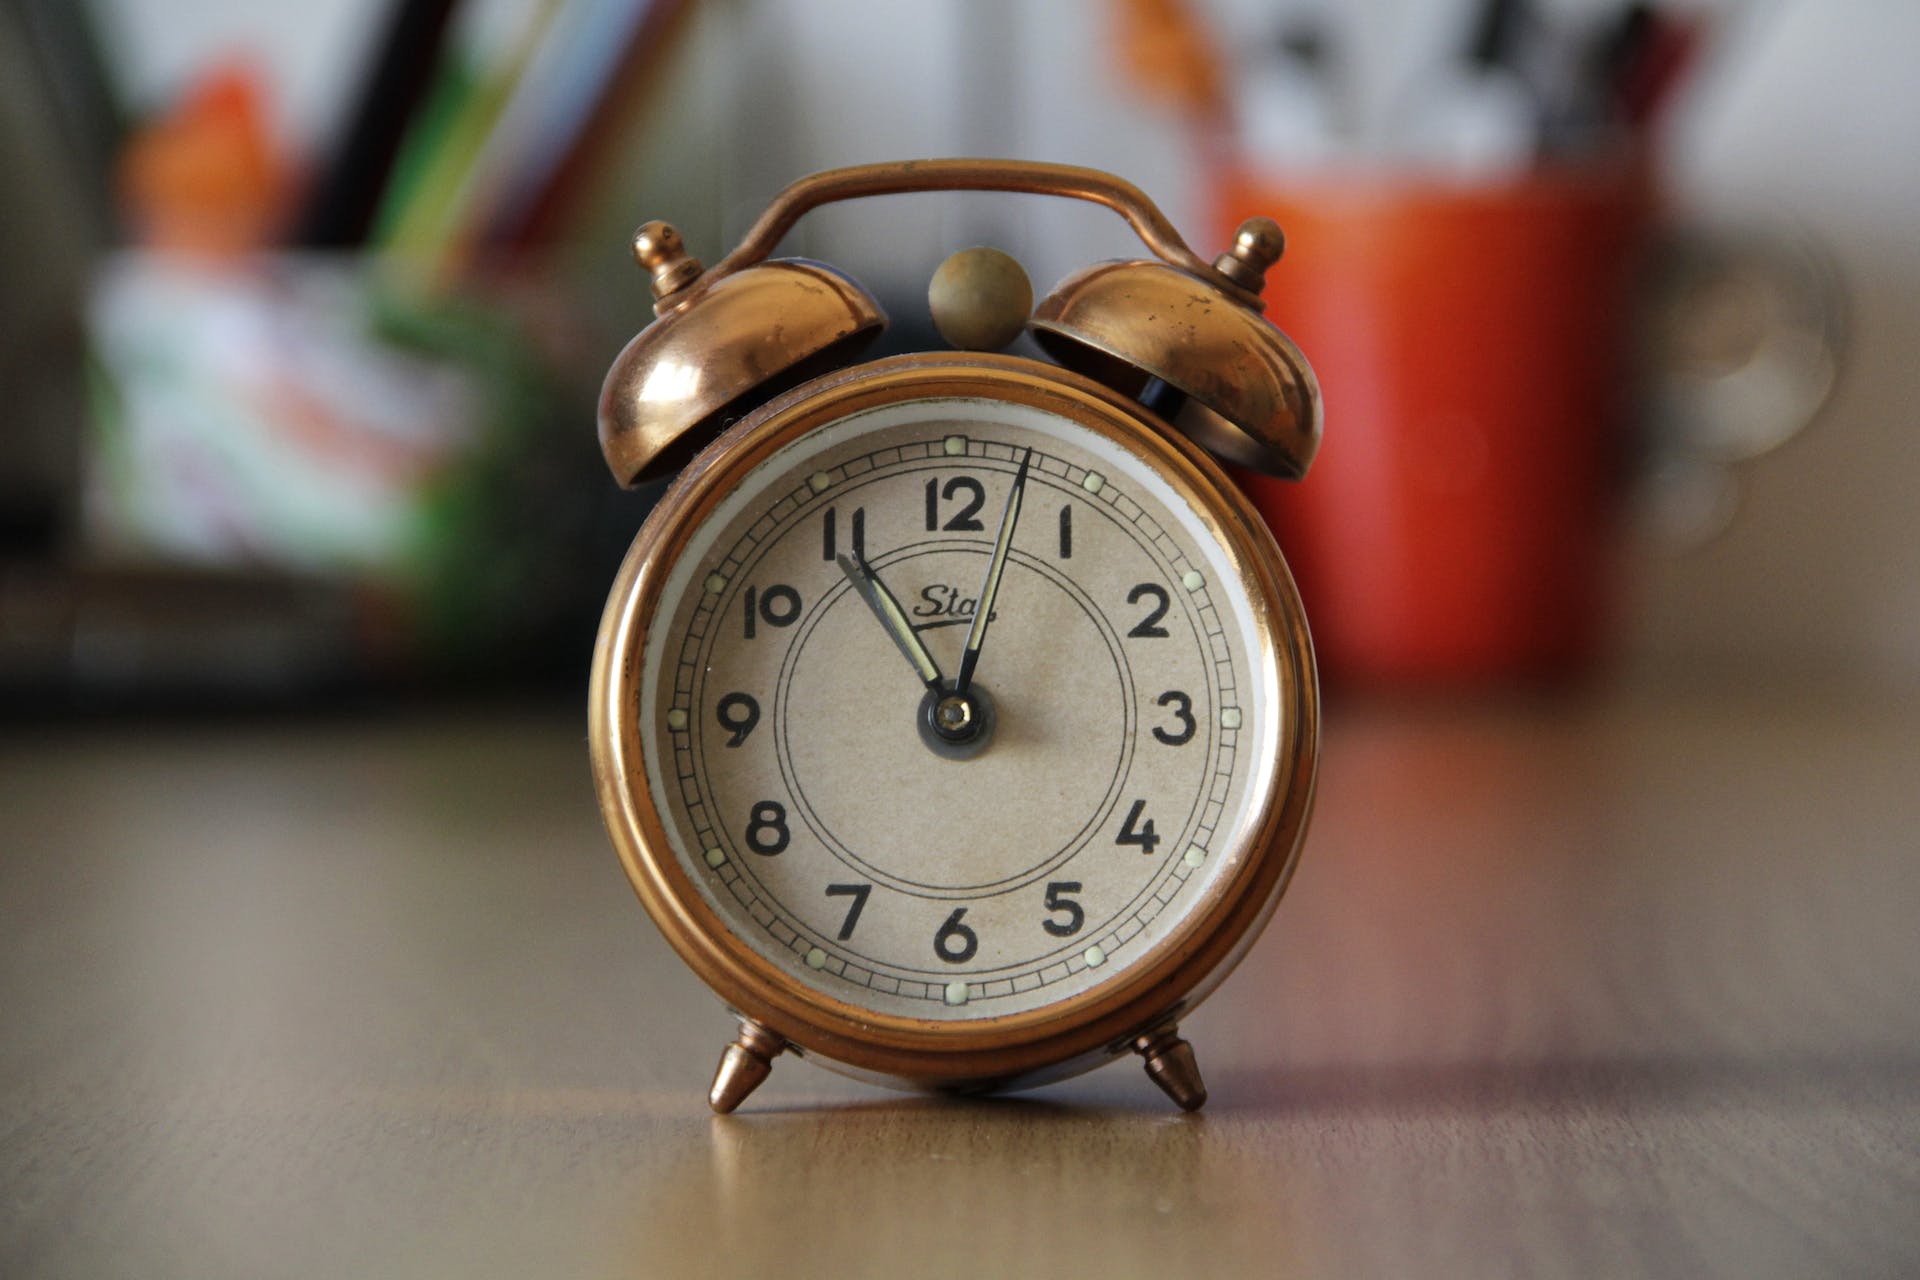 An alarm clock | Source: Pexels